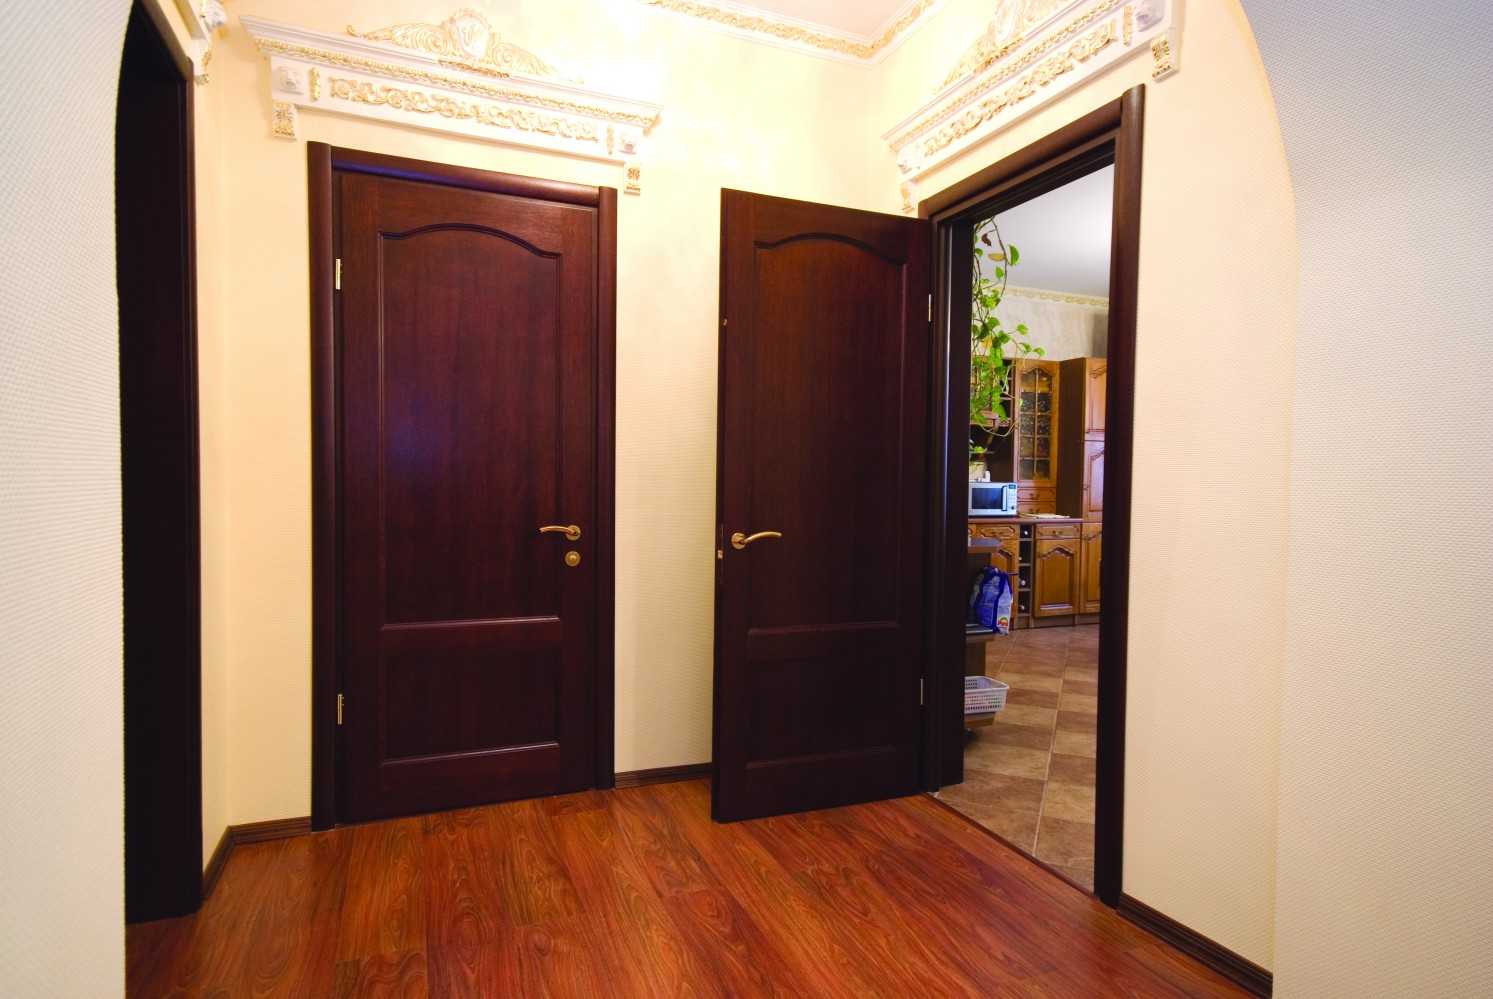 Недорогие межкомнатные двери. как выбрать качественную недорогую дверь и где ее купить